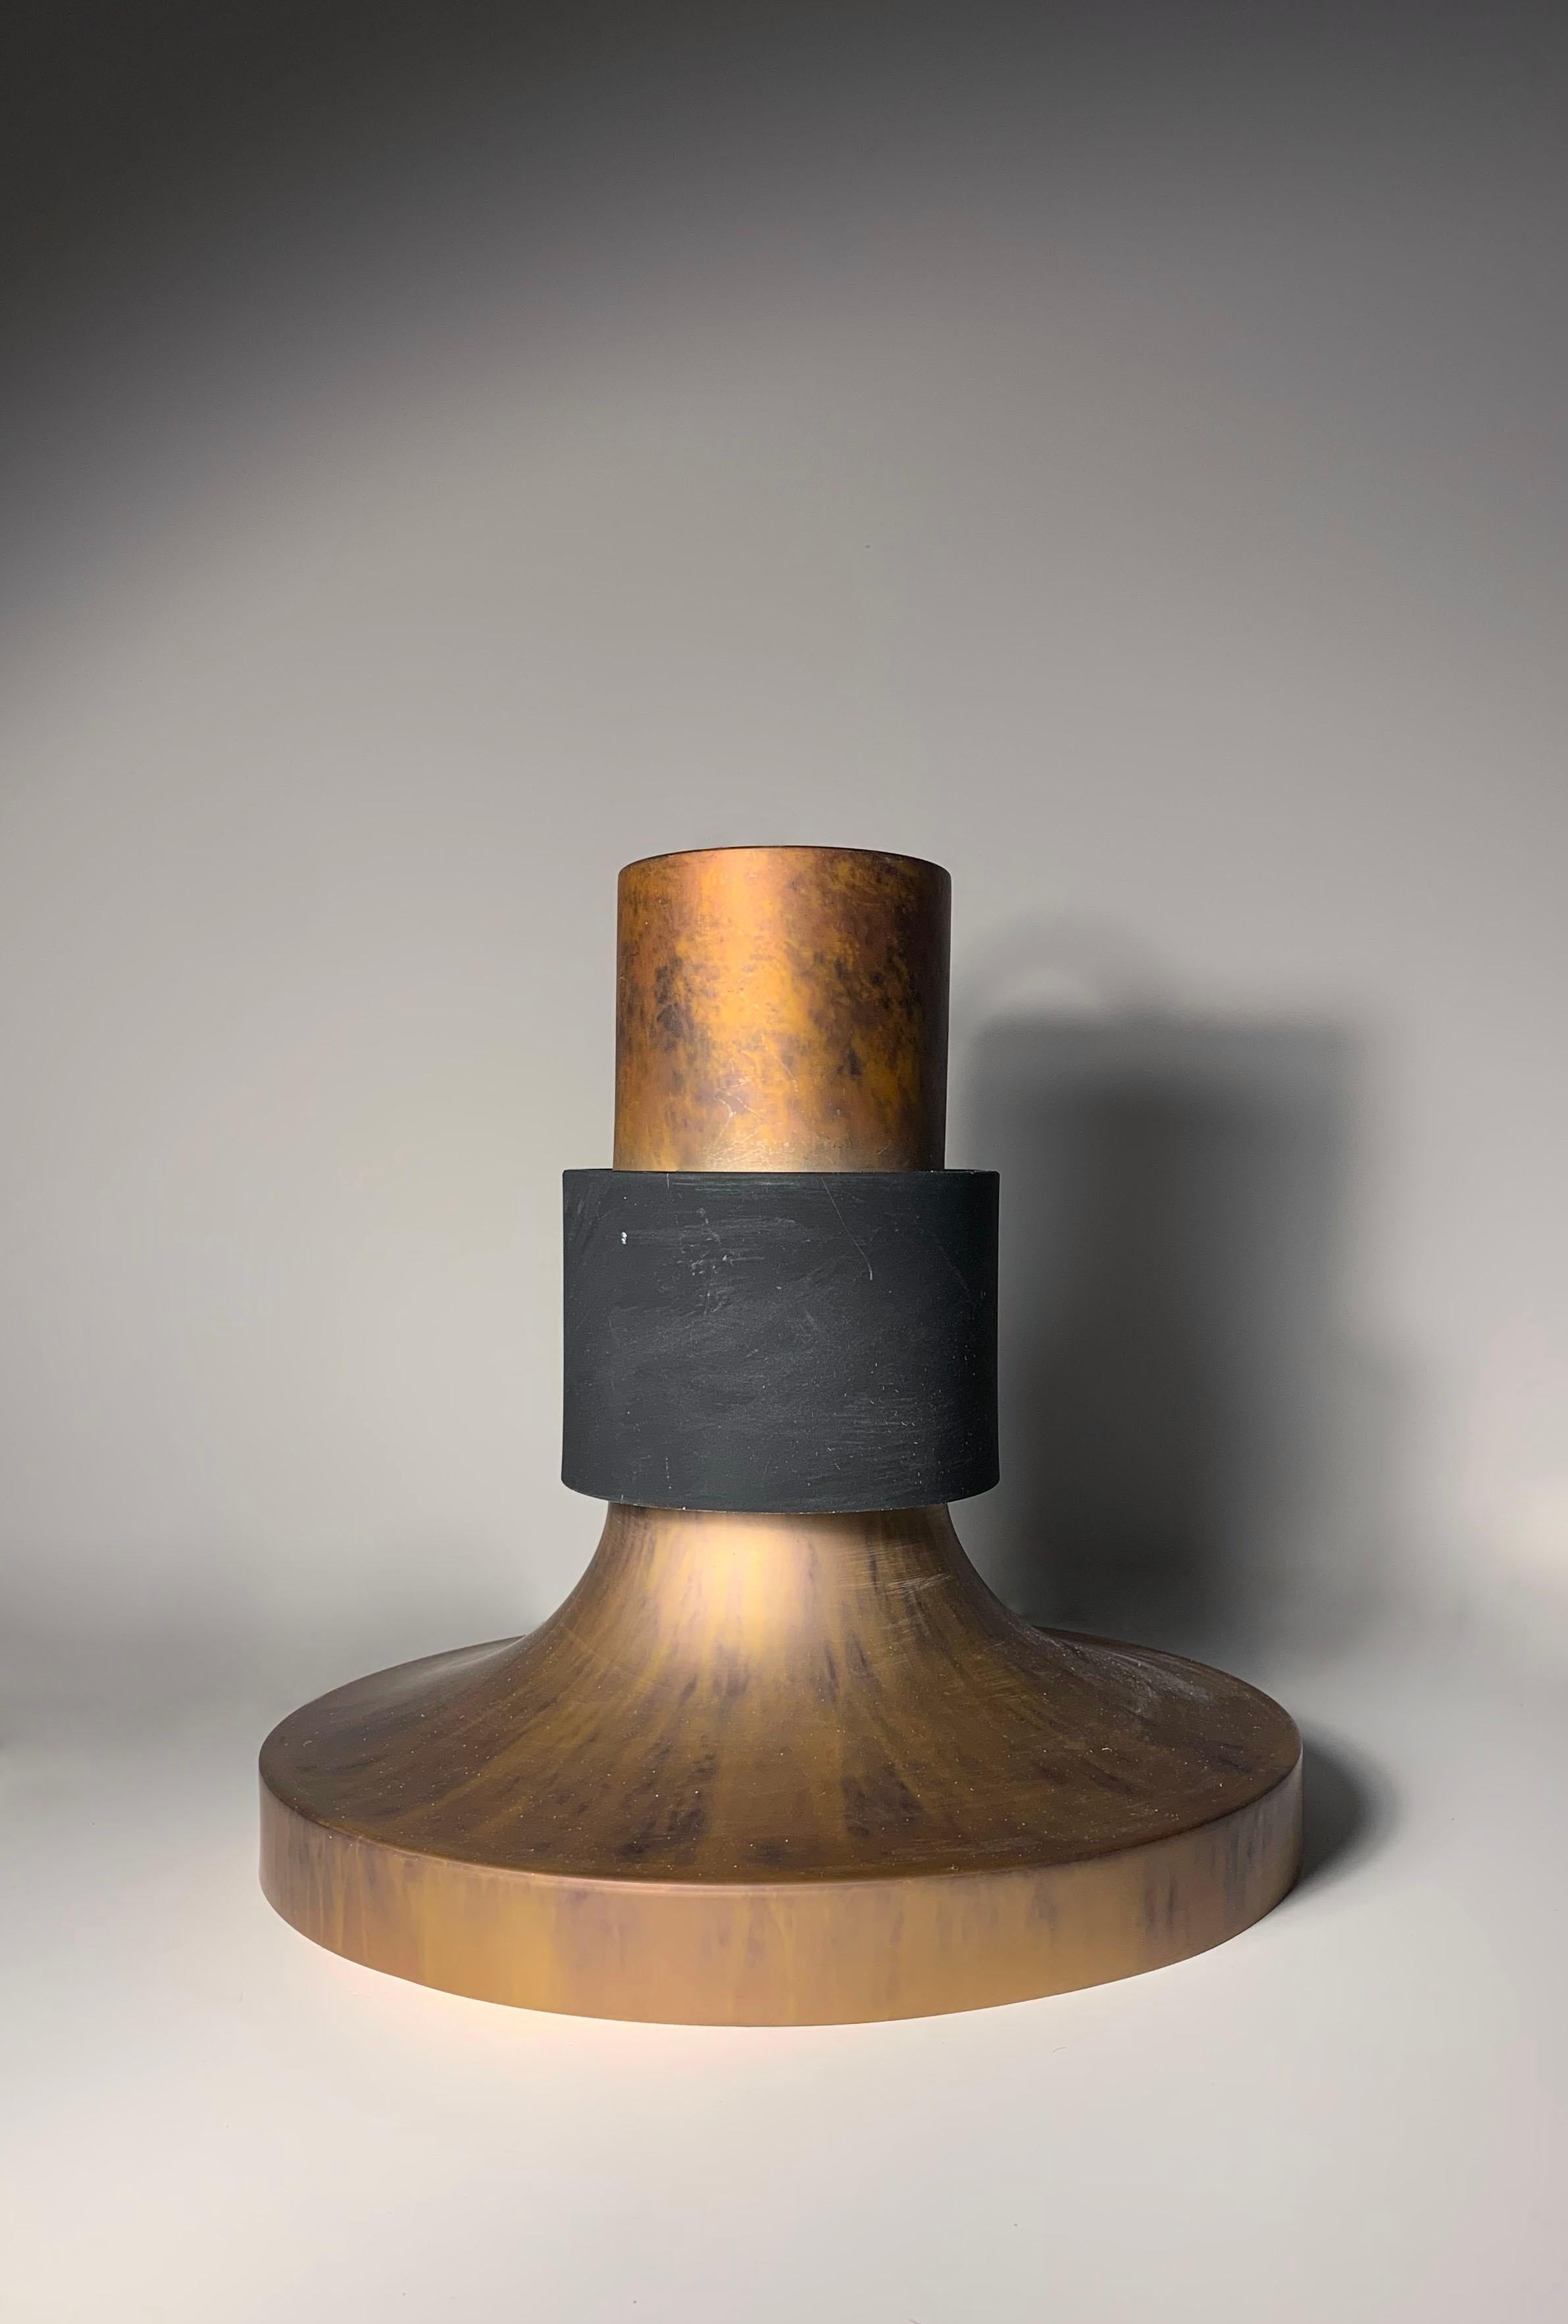 Lightolier Vintage By Copper Patinated Copper Suspension lightture complete with glass lens that sits in center.  Il s'agit d'un luminaire léger fabriqué avec un métal de faible épaisseur. Il est un peu facile de le plier et de le façonner pour